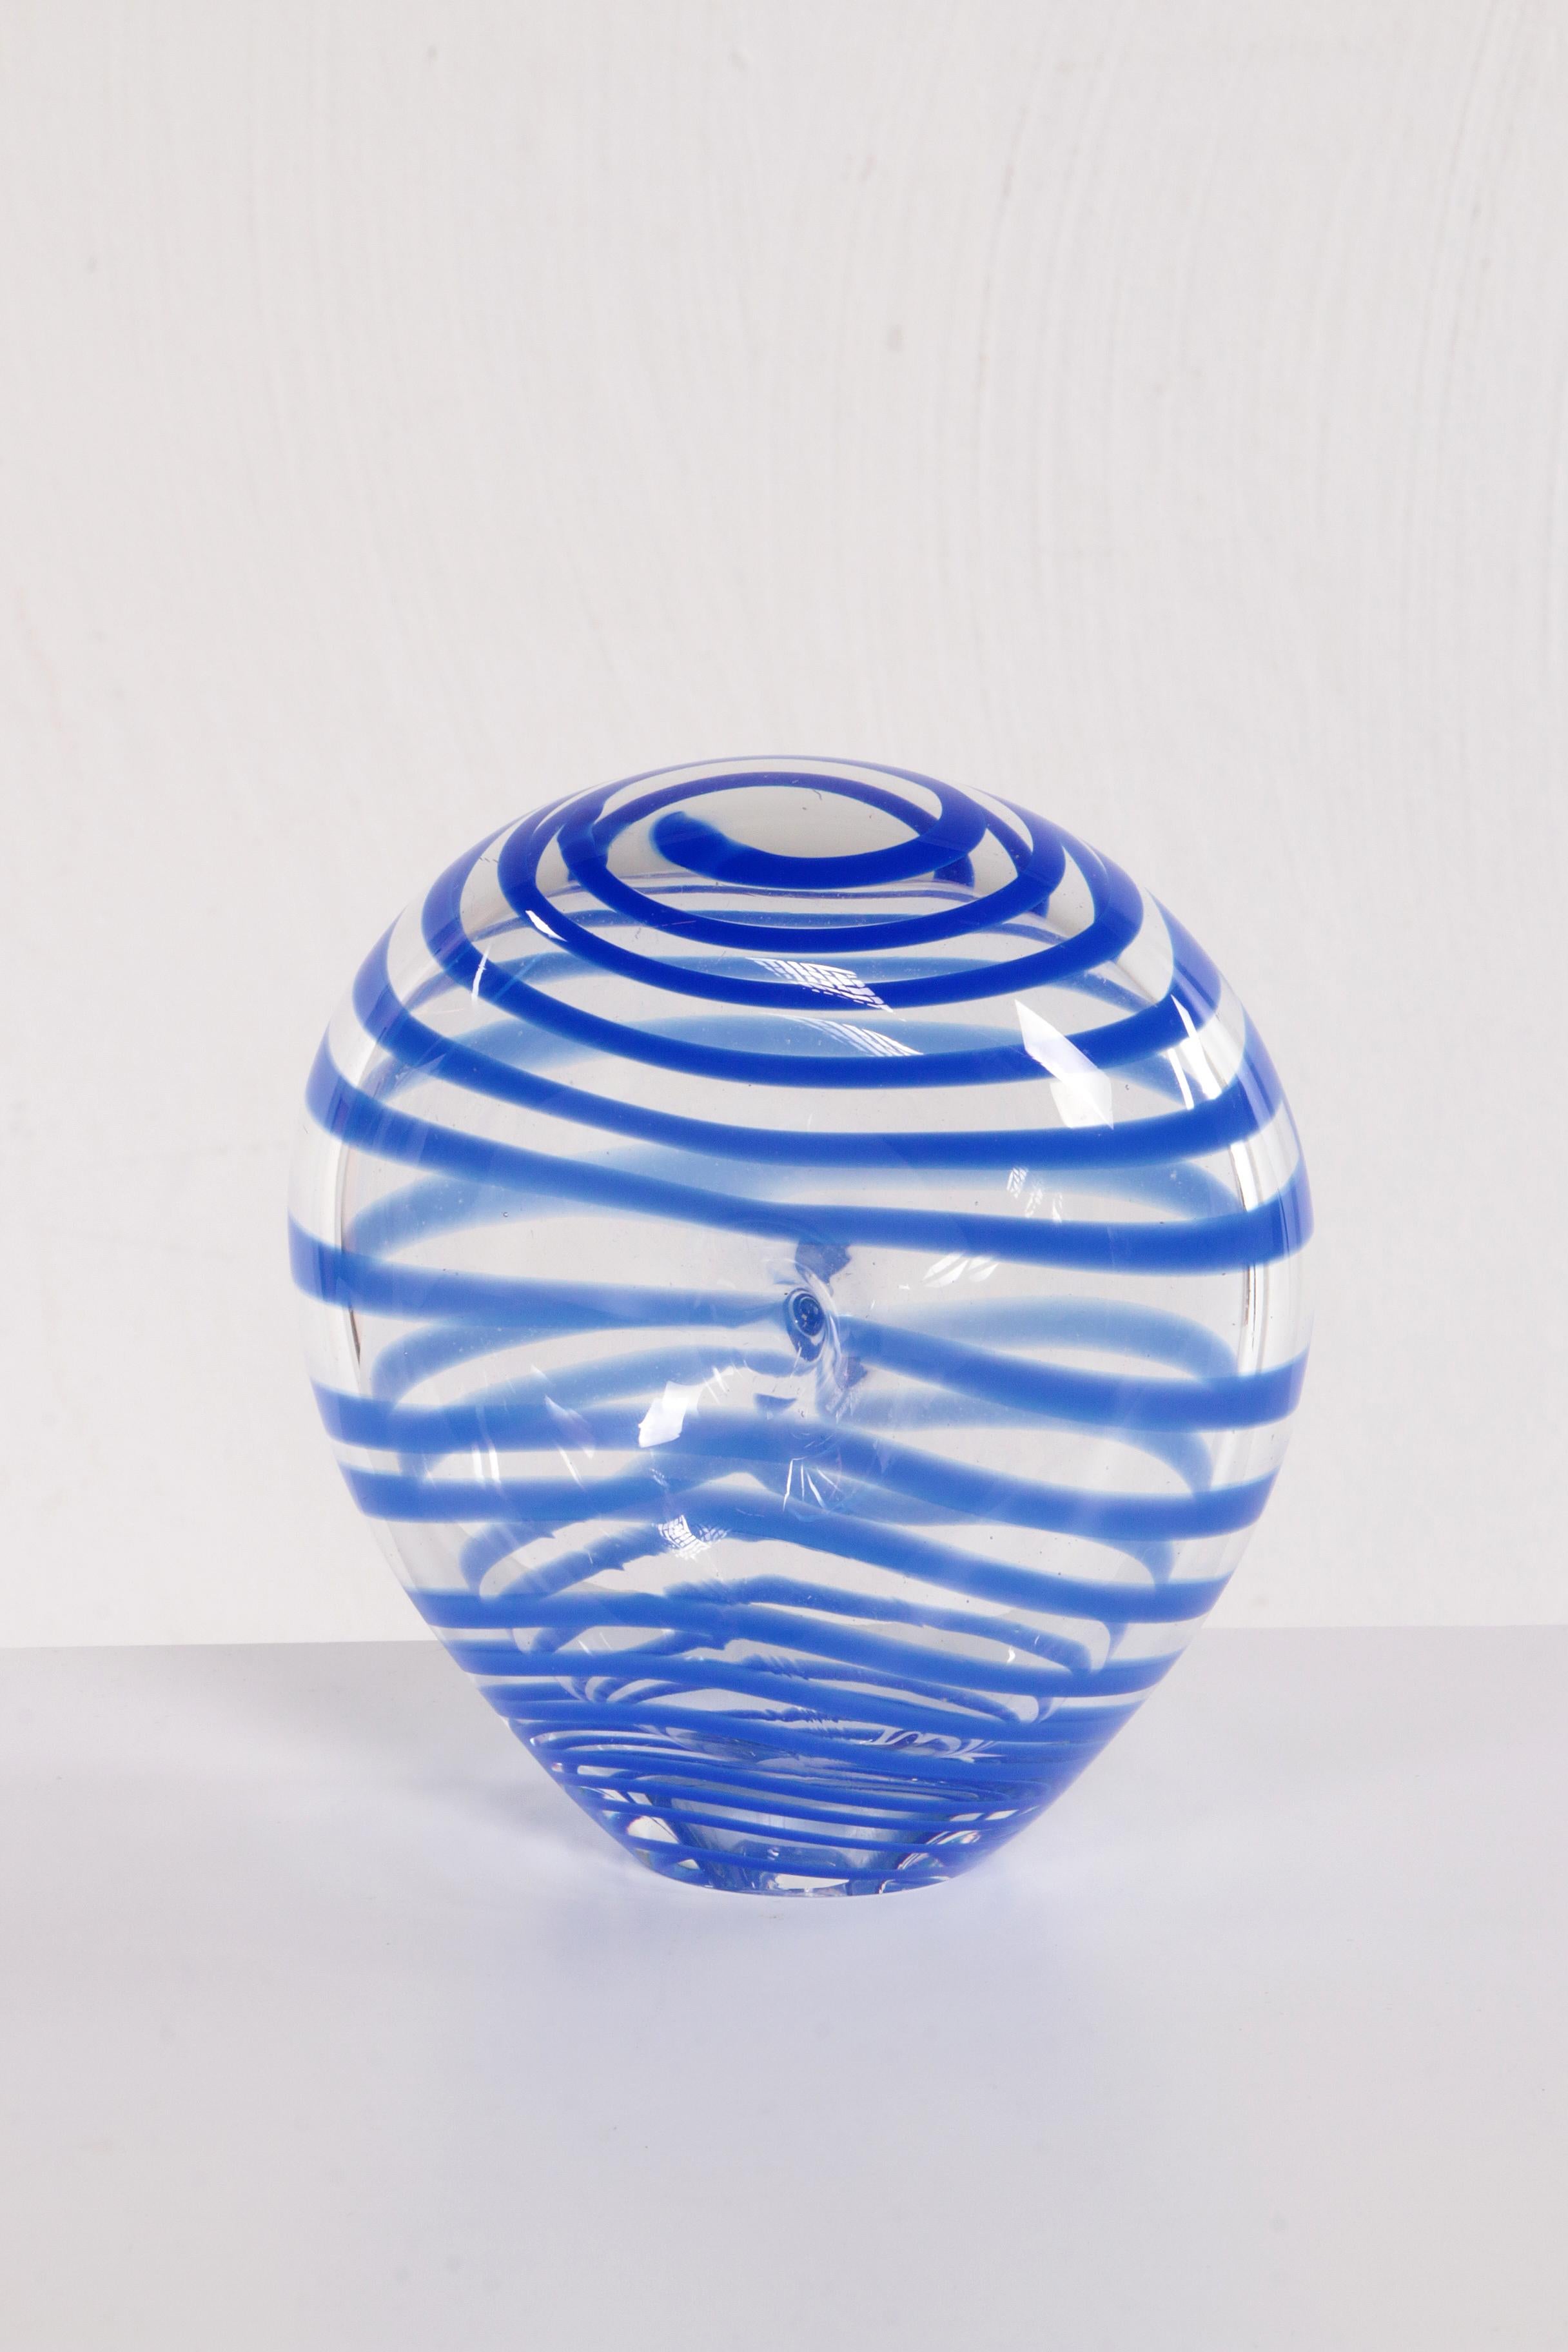 Willem Heesen Glass Art work Made by Glass Studio De Oude Horn Leerdam 88 For Sale 2